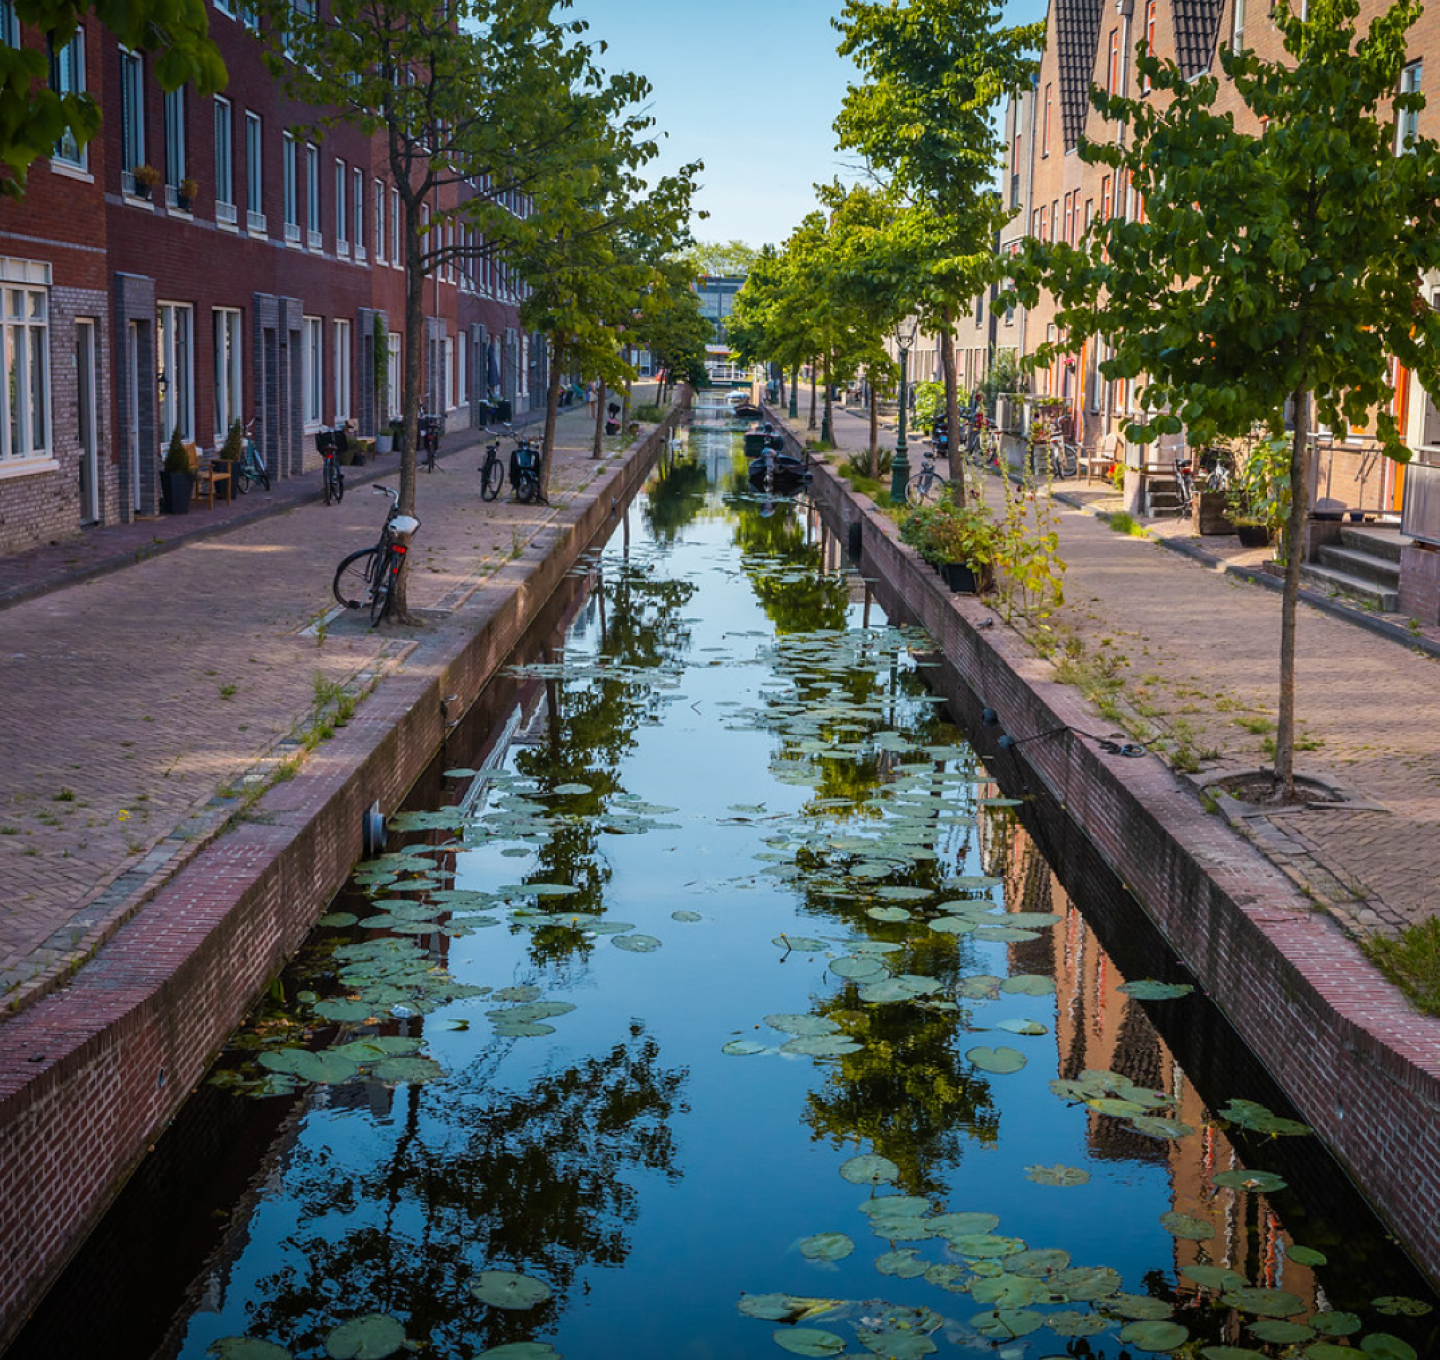 Binnenstad Leiden